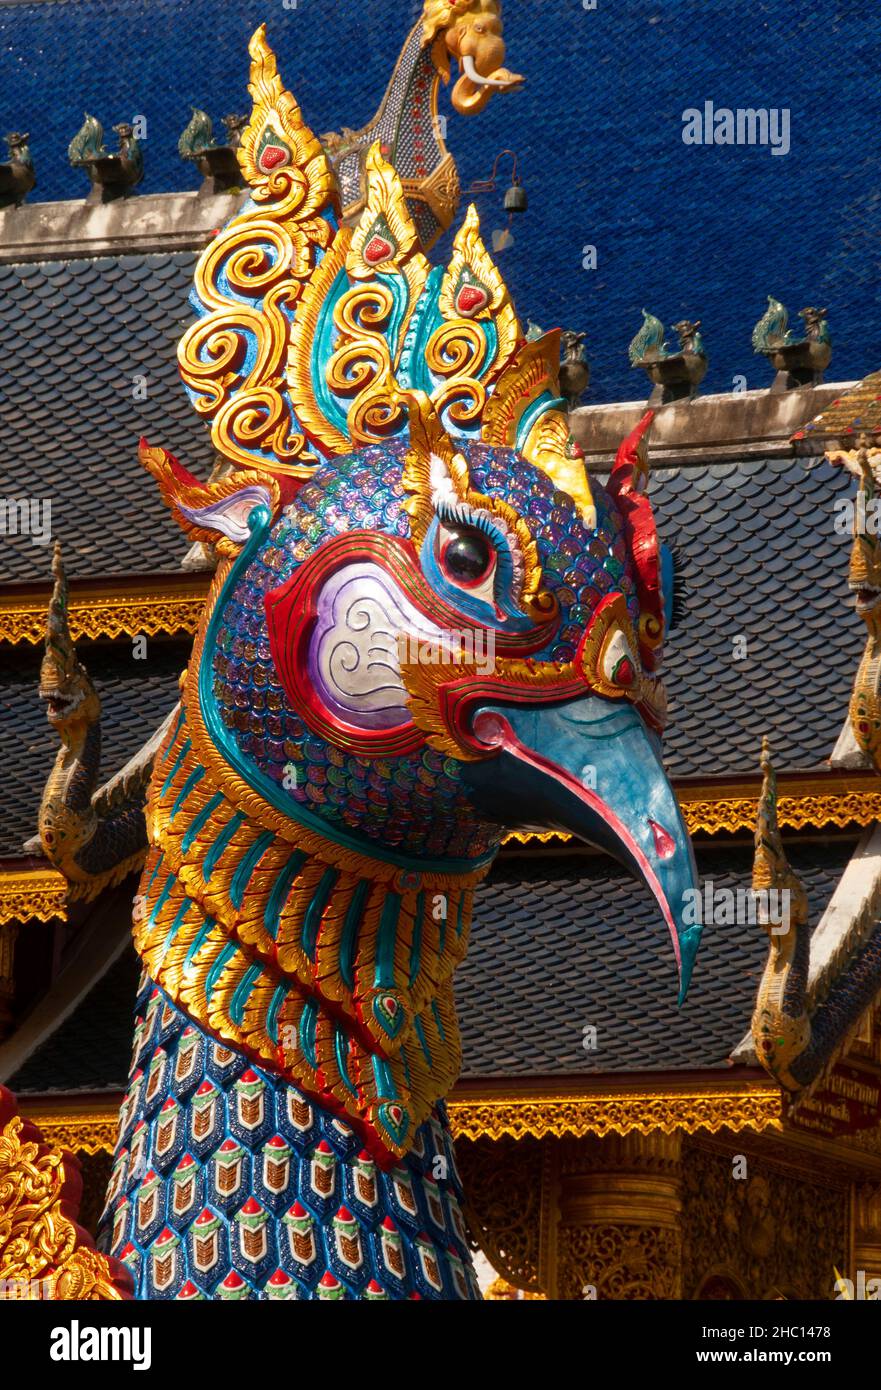 Thailand: Hamsa oder heilige Gans in Wat Ban Den, Ban Inthakin, Bezirk Mae Taeng, Chiang Mai. Wat Ban Den, auch bekannt als Wat Bandensali Si Mueang Kaen, ist ein großer buddhistischer Tempelkomplex nördlich der Stadt Chiang Mai im Norden Thailands. Stockfoto